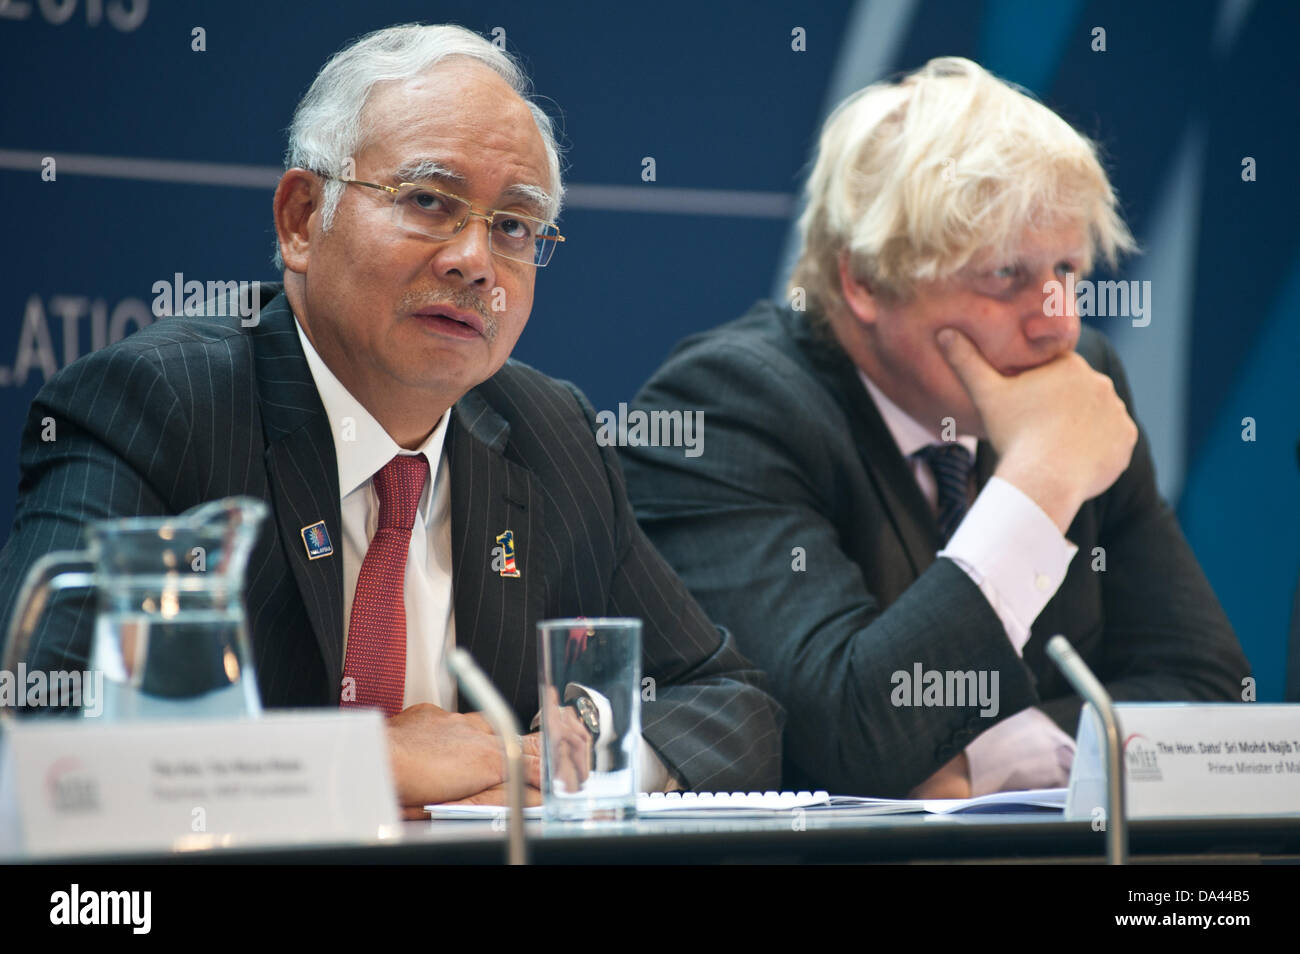 Londres, Reino Unido - 3 de julio de 2013: El Primer Ministro de Malasia, el Honorable Dato' Sri Mohd Najib Tun Abdul Razak, y el alcalde de Londres, Boris Johnson, anfitrión de una reunión informativa para lanzar el 9º Foro Económico Islámico Mundial. Crédito: Piero Cruciatti/Alamy Live News Foto de stock